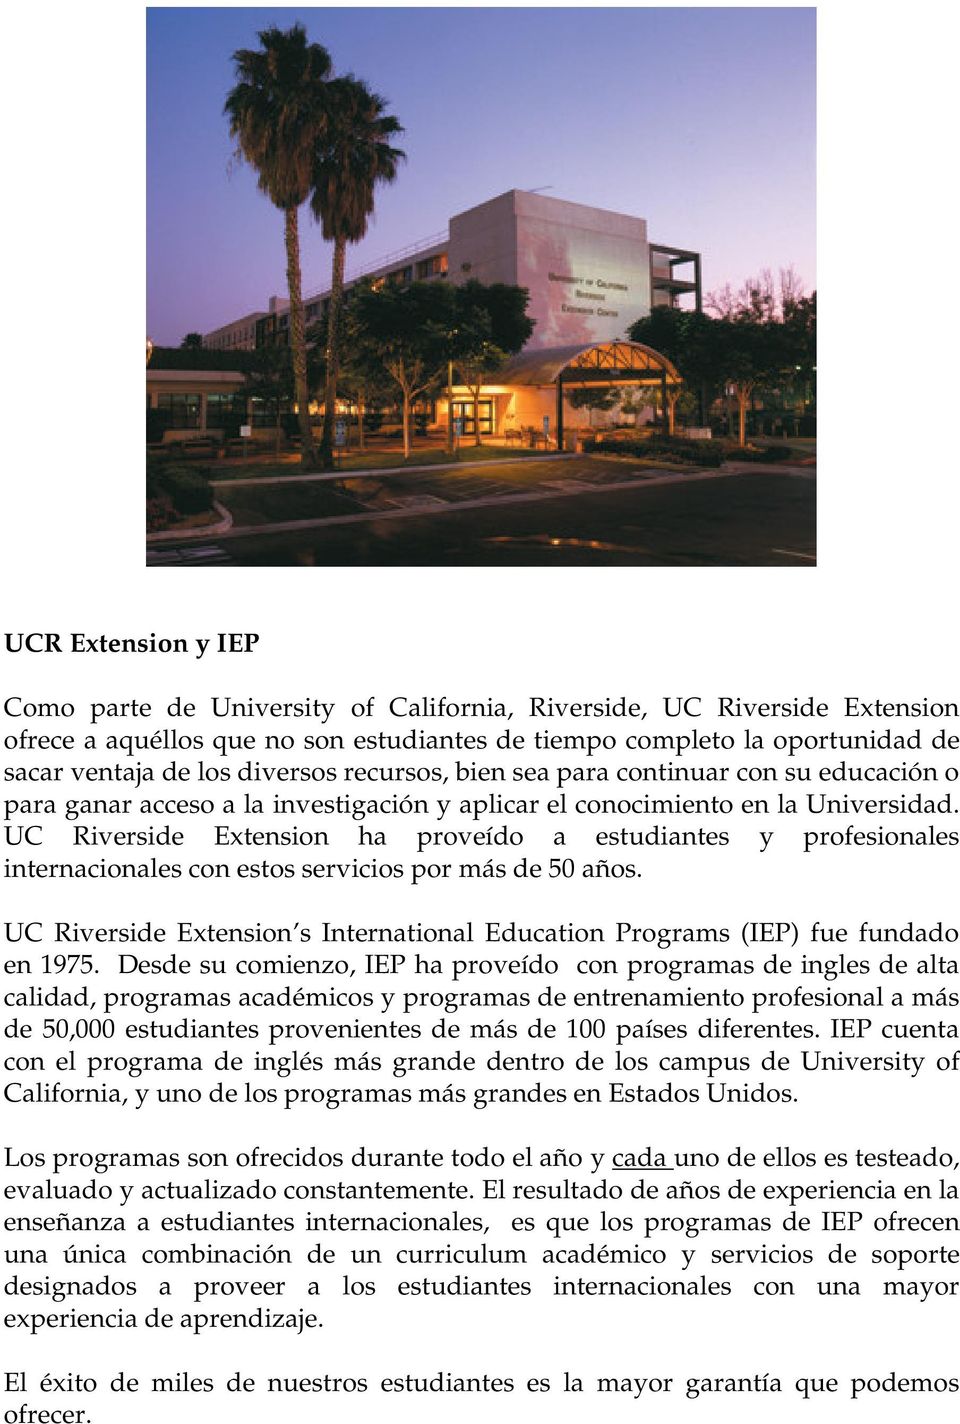 UC Riverside Extension ha proveído a estudiantes y profesionales internacionales con estos servicios por más de 50 años.